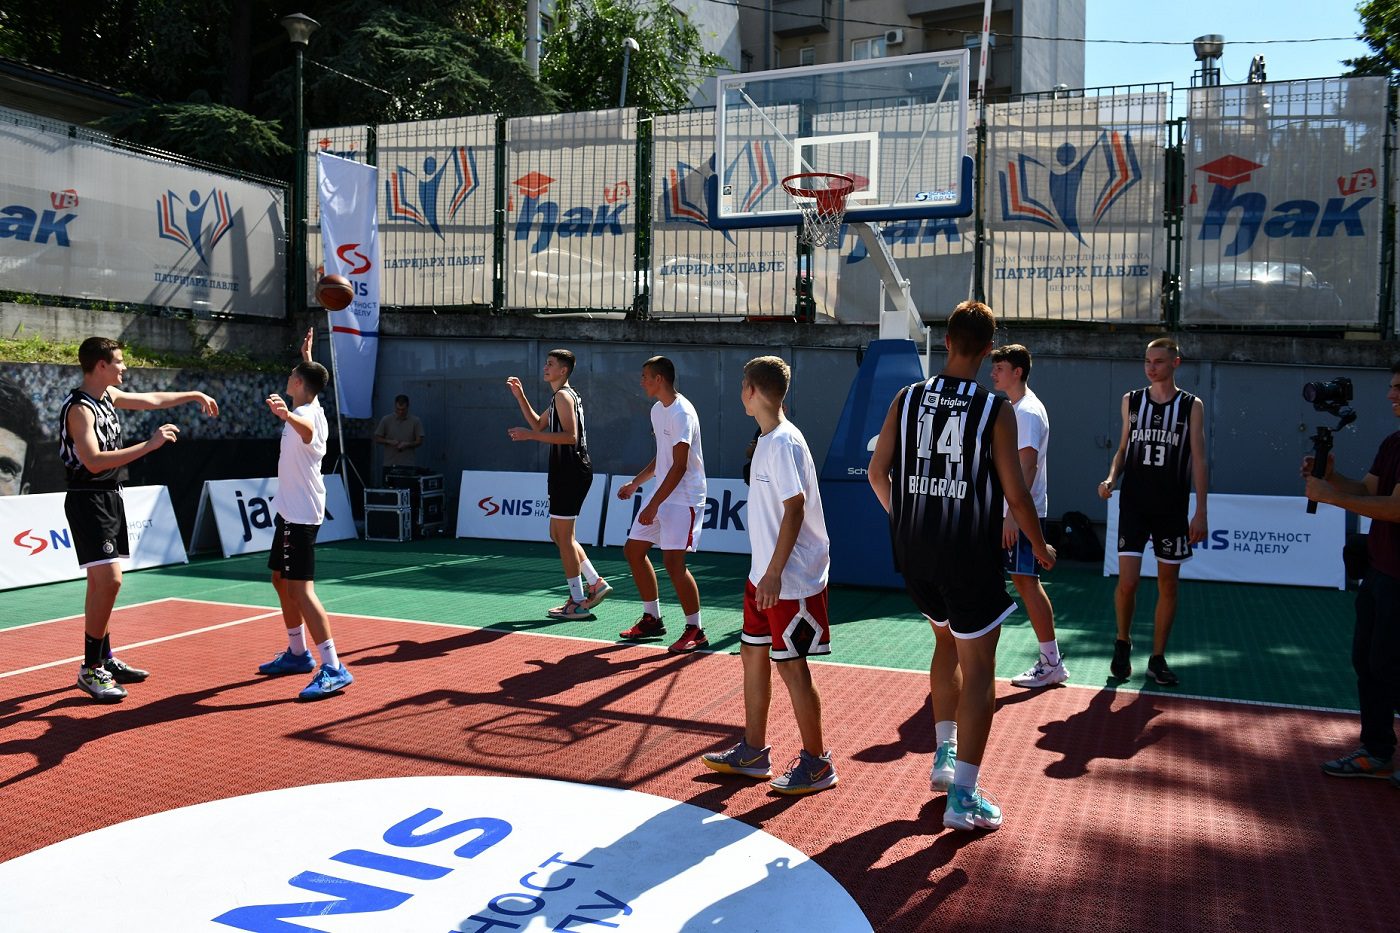 Deca igraju košarku, dečiji kamp "Srbija te zove"